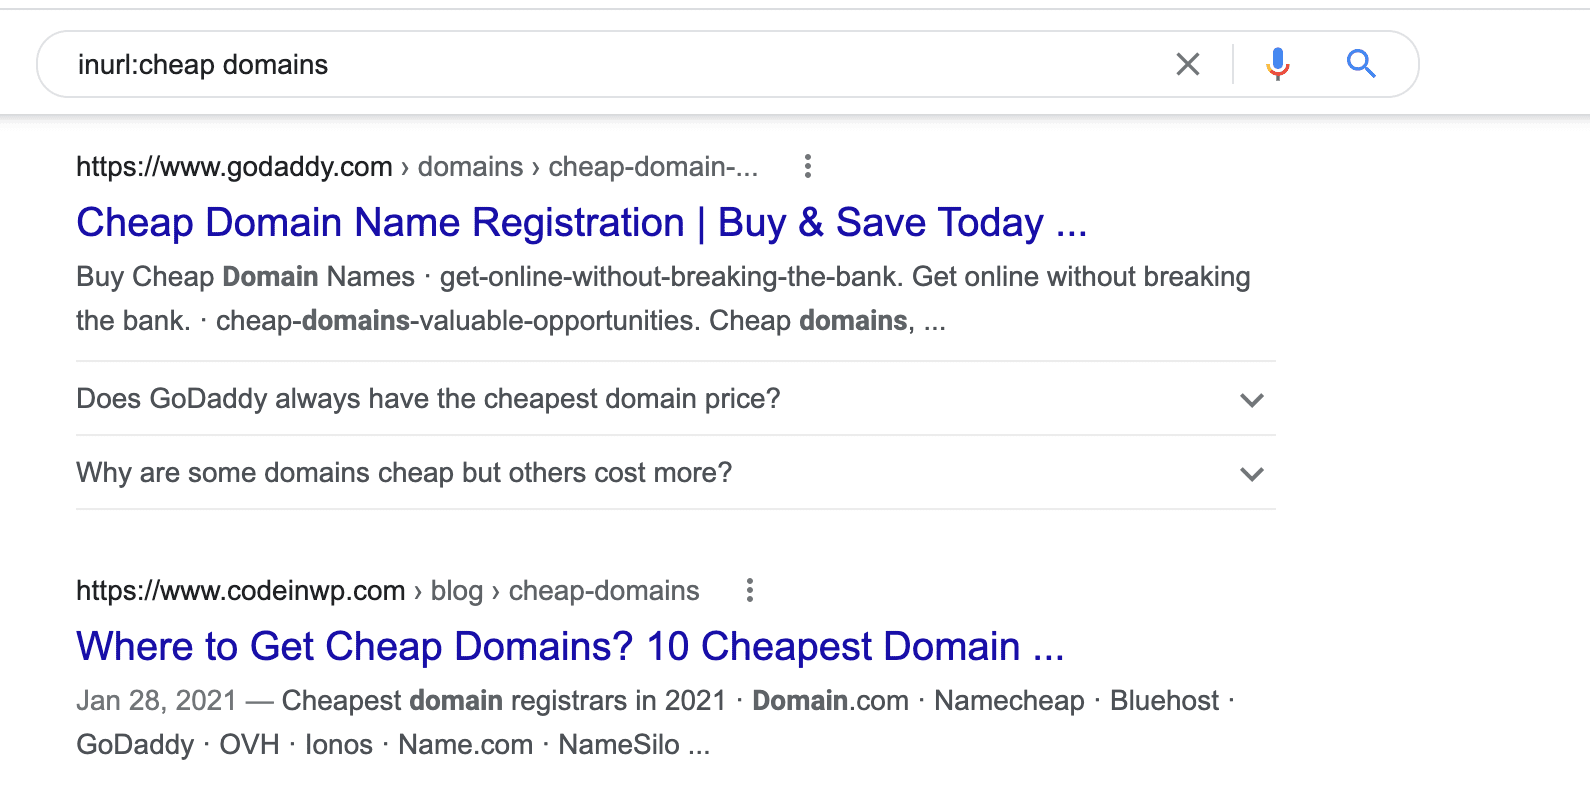 inurl:cheap domains